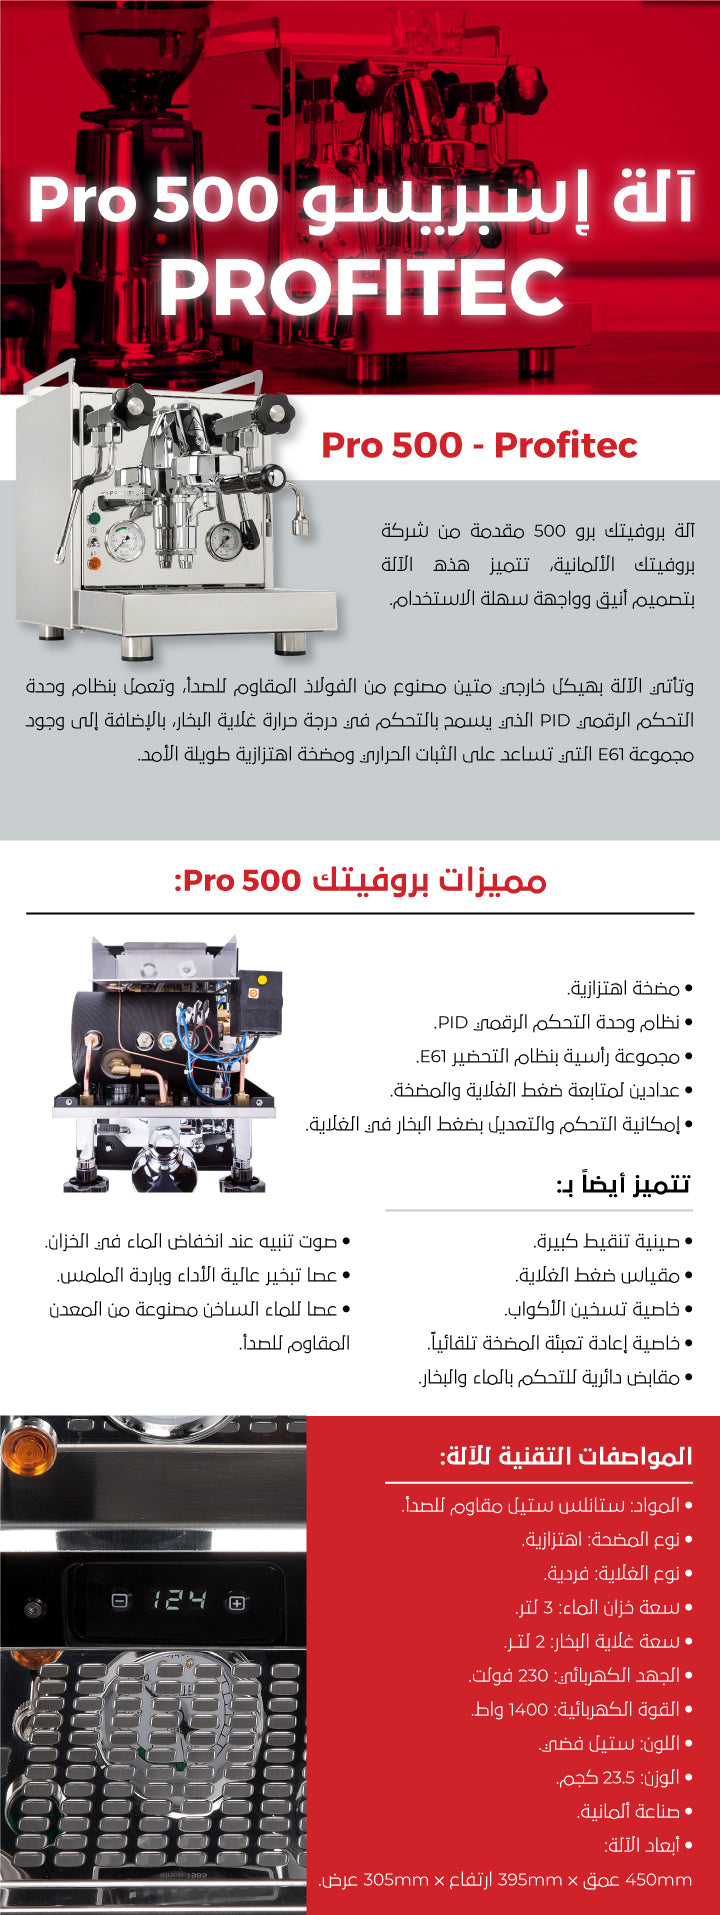 آلة إسبرسو بروفيتك برو 500 ، Pro 500 Espresso Machine - Profitec